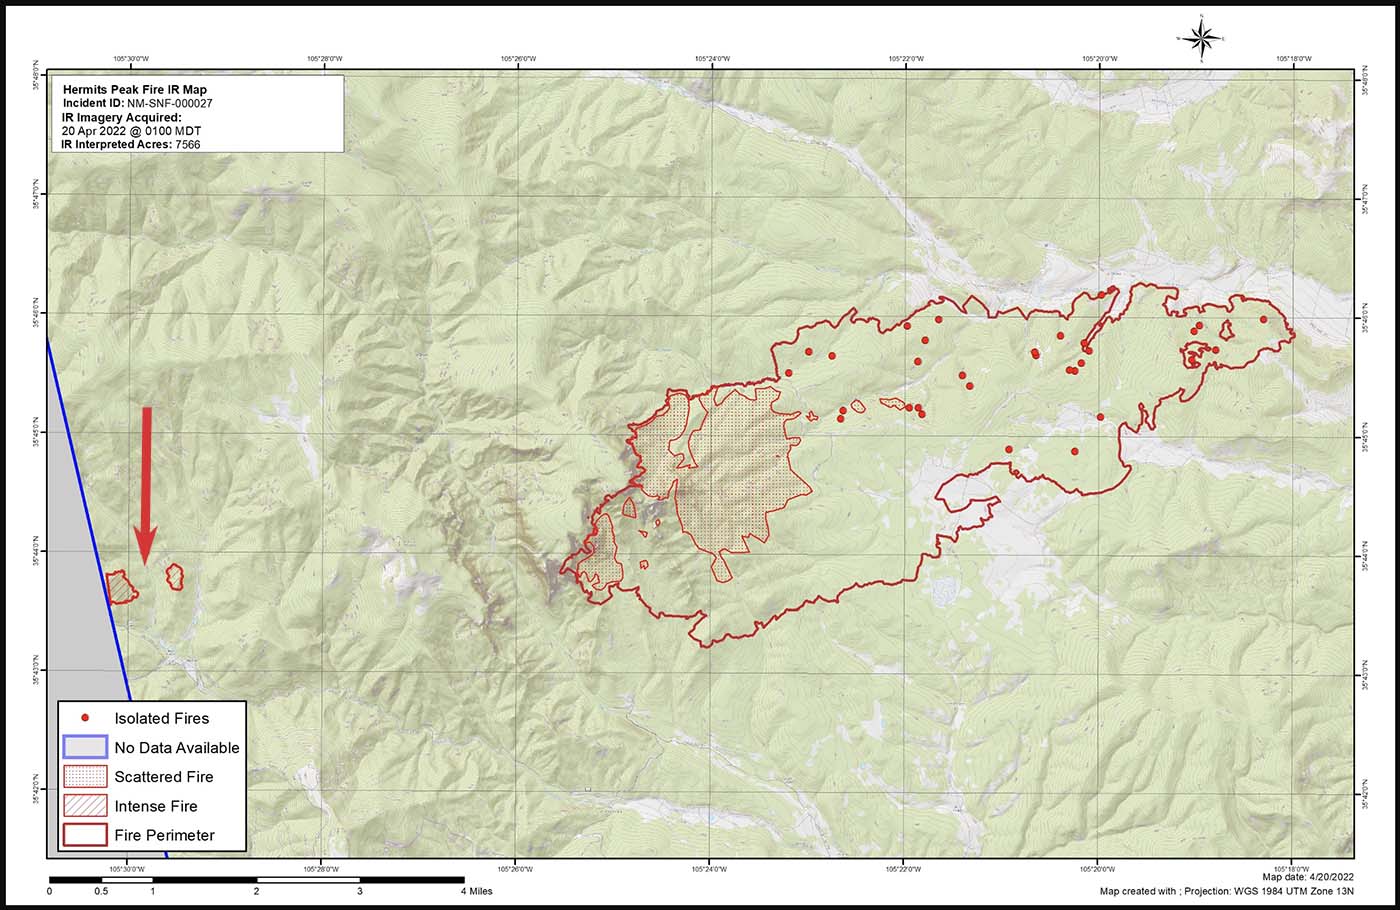 Map Calf Cyn Hermits Peak Fire 1h May 20, 2022